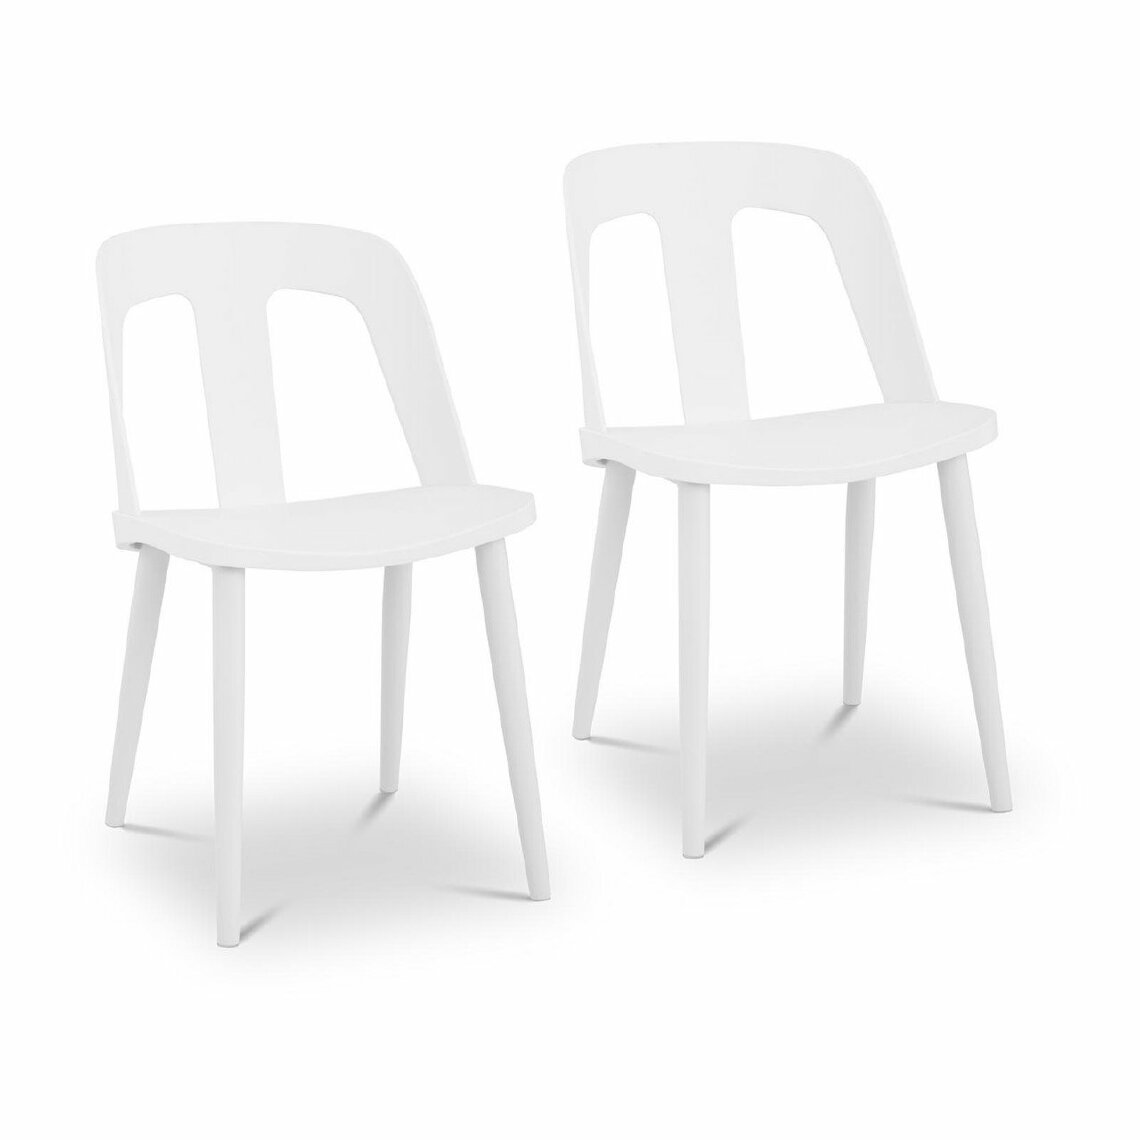 Helloshop26 - Lot de 2 chaises salon salle à manger 150 kg max surface d'assise de 56 x 46 cm blanc 14_0000089 - Chaises